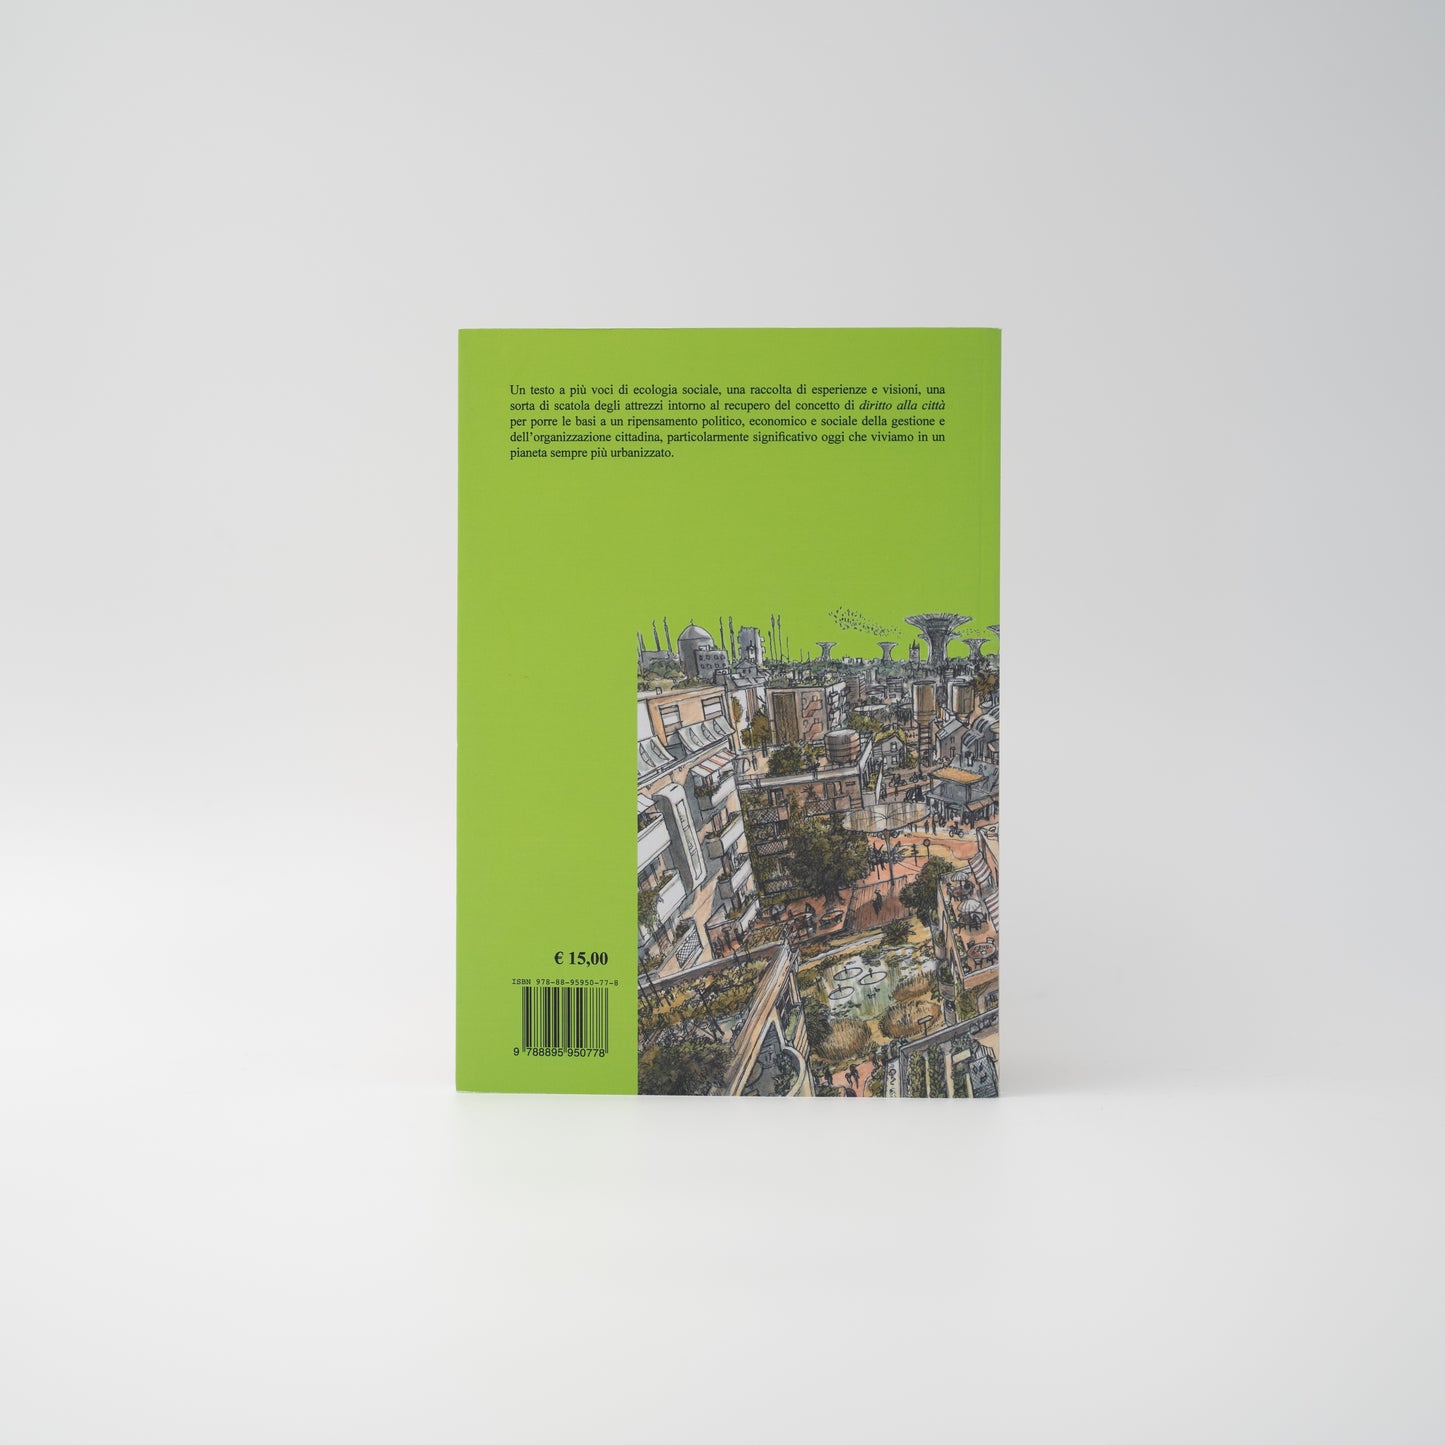 Ecologia sociale e diritto alla città